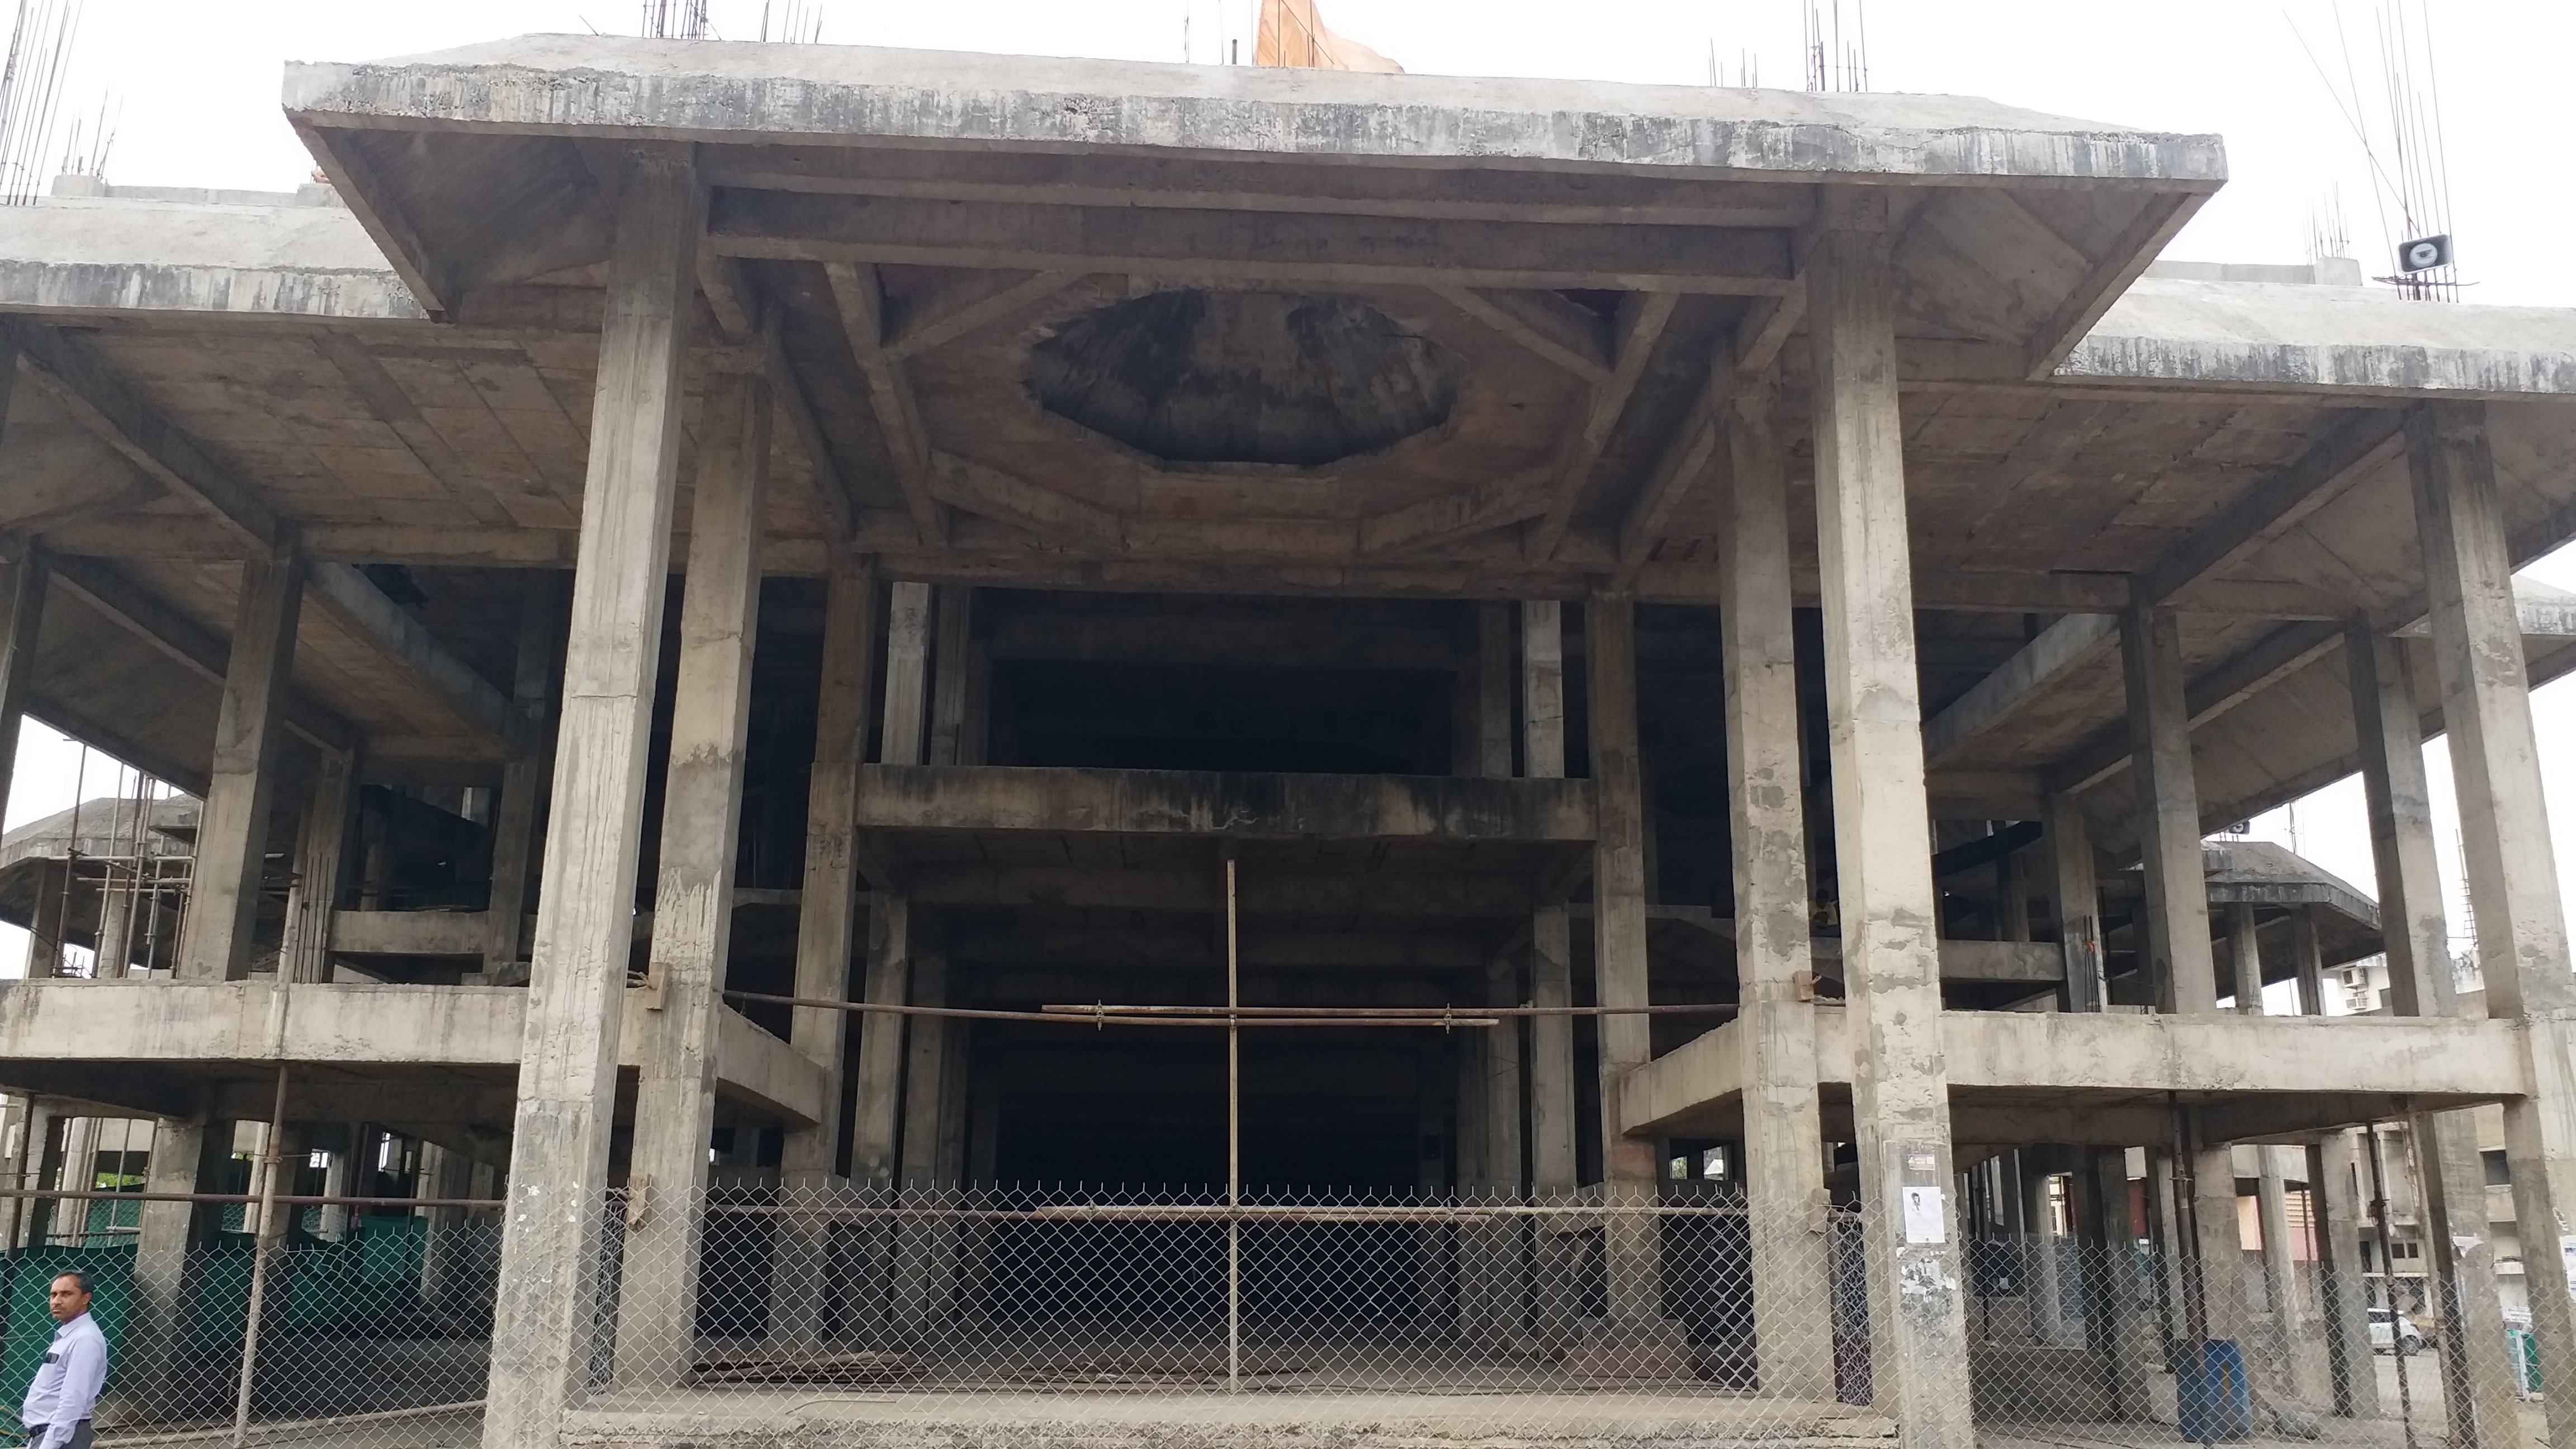 Hanuman temple construction incomplete